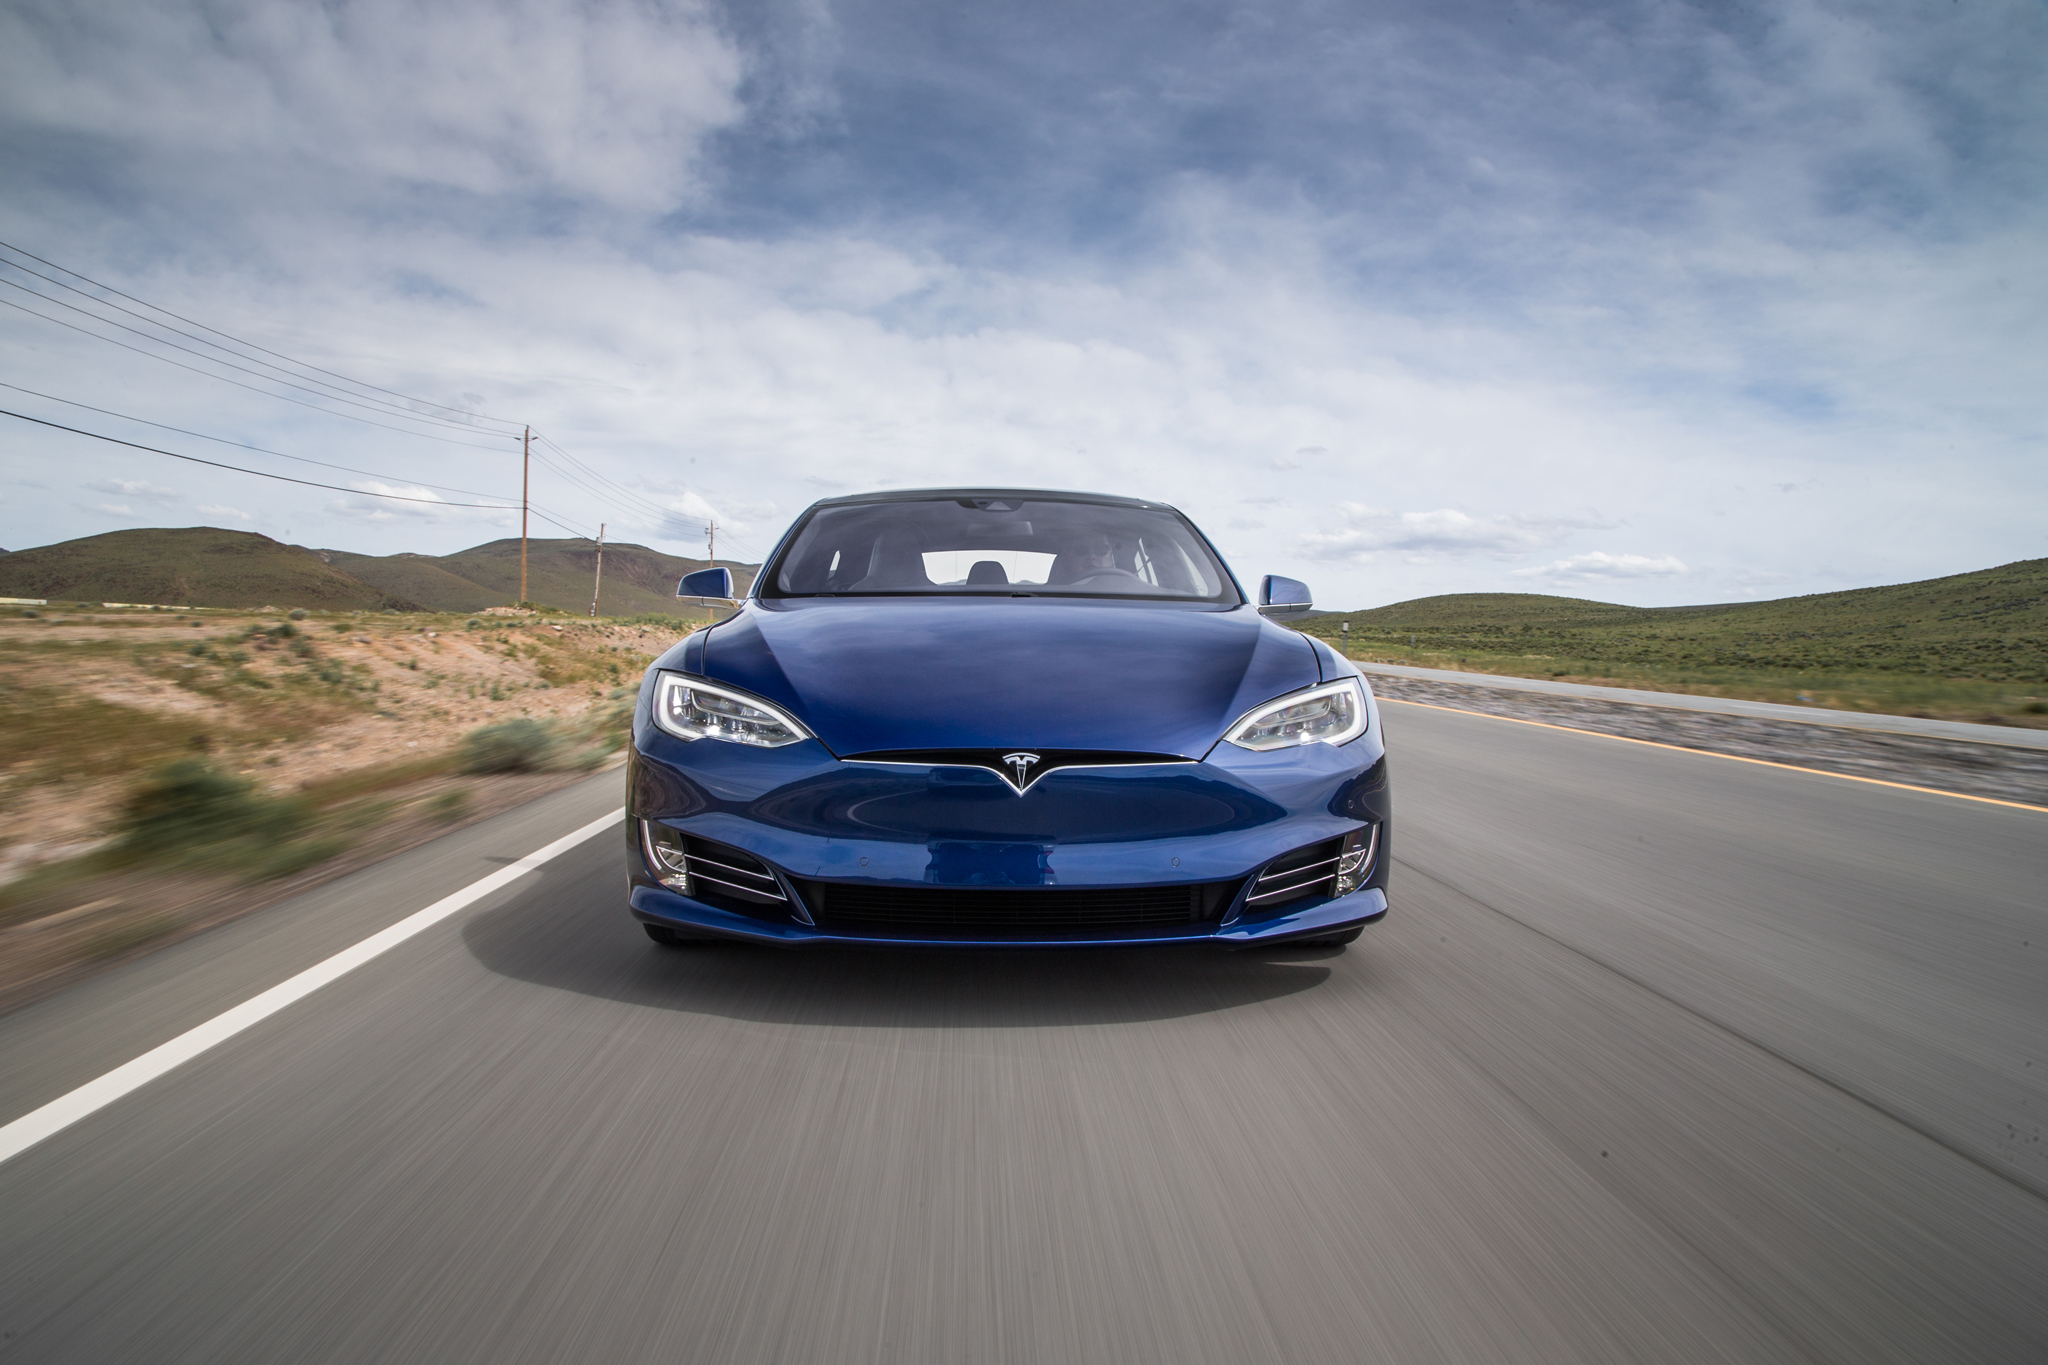 Tesla continúa imparable en ventas, 25.000 unidades entregadas en el primer trimestre